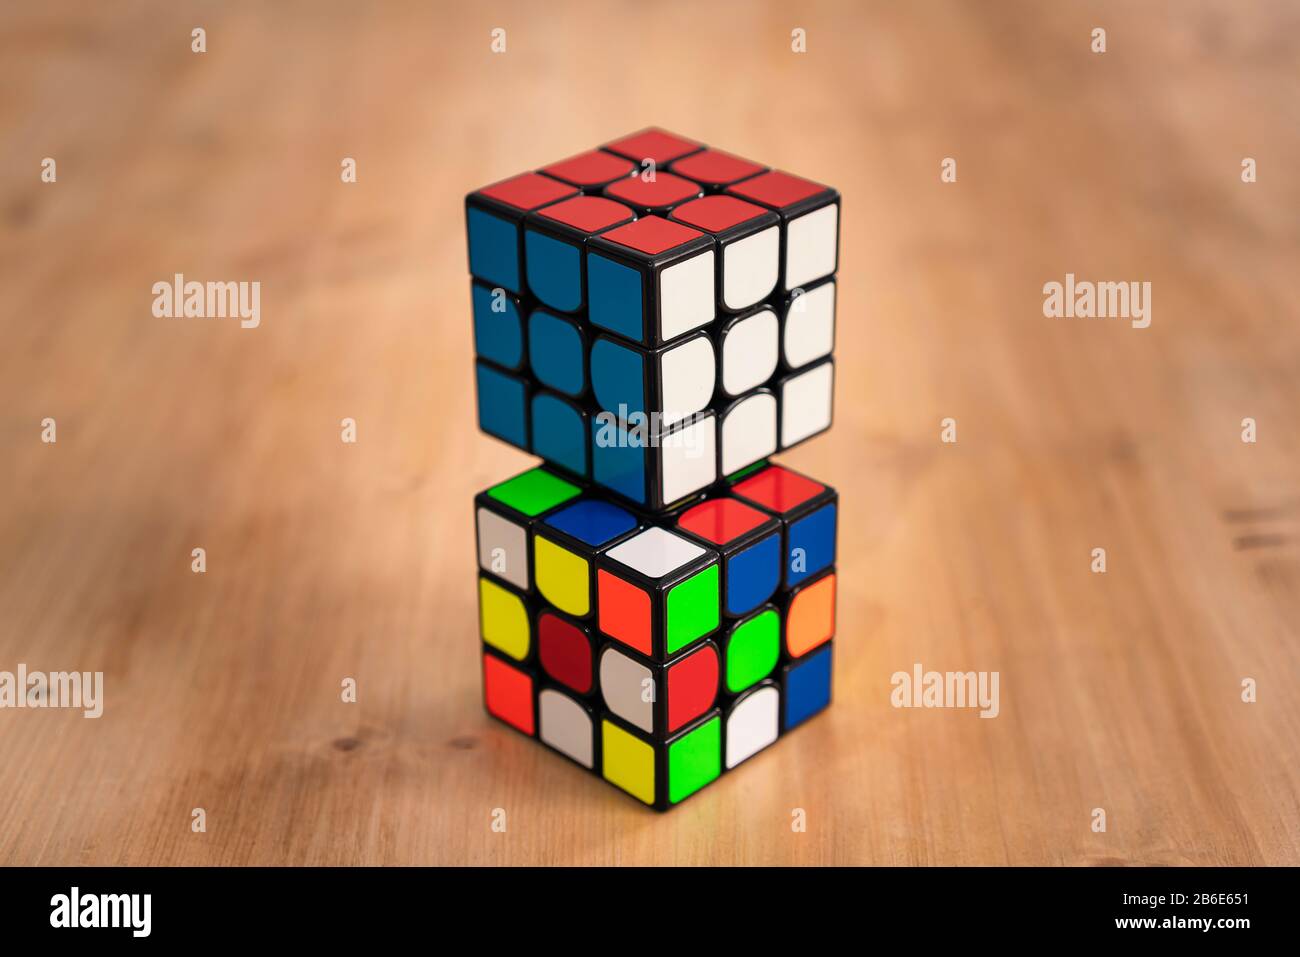 Mehrere Rubik-Würfel Geheimdienstspielzeuge ungelöst, in einem Holztisch Stockfoto